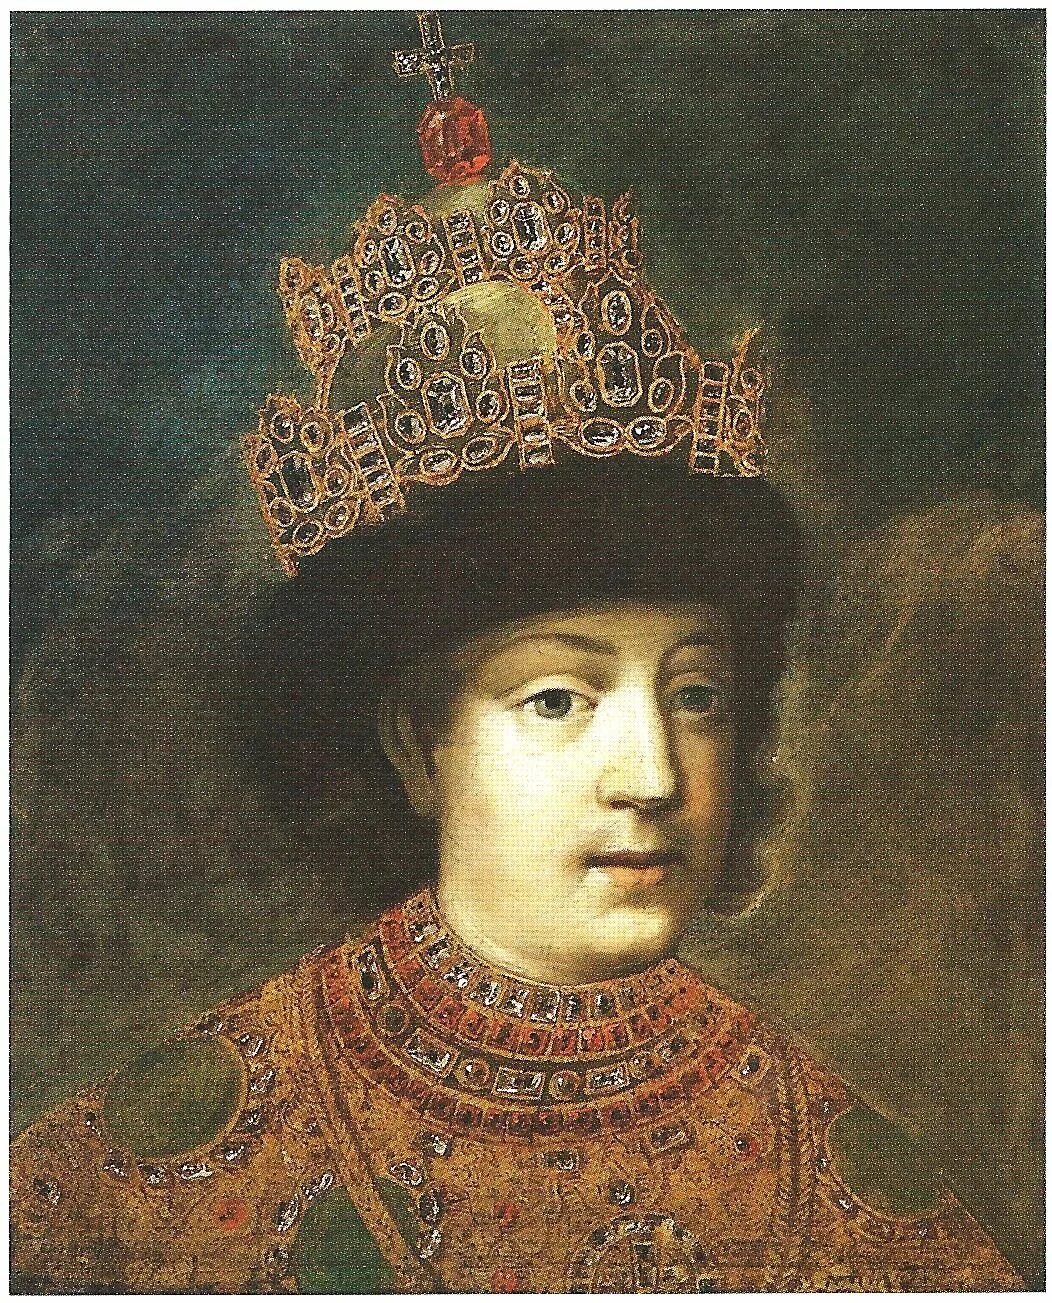 Фёдор III Алексеевич. Царь фёдор Алексеевич 1676-1682. Мотивы царей